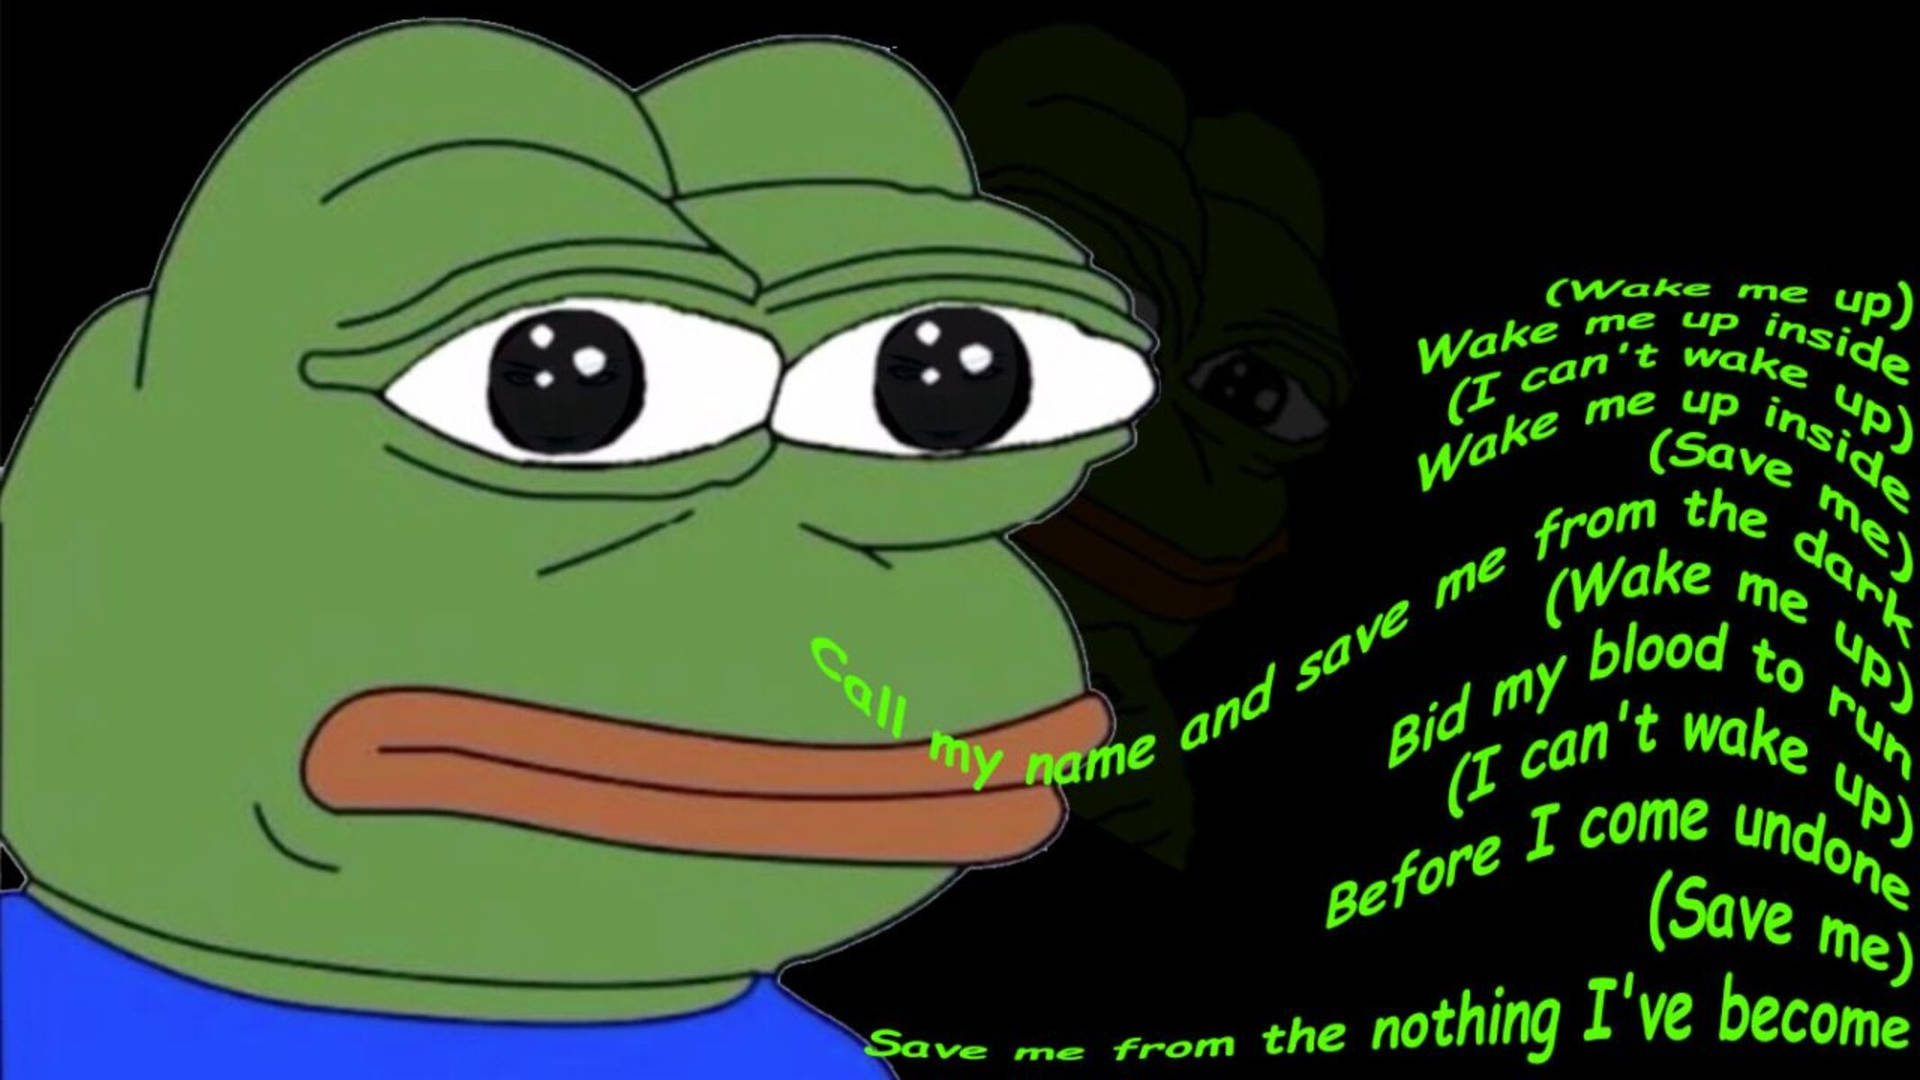 Pepe Frog dank meme with Bring Me to Life lyrics wallpaper.